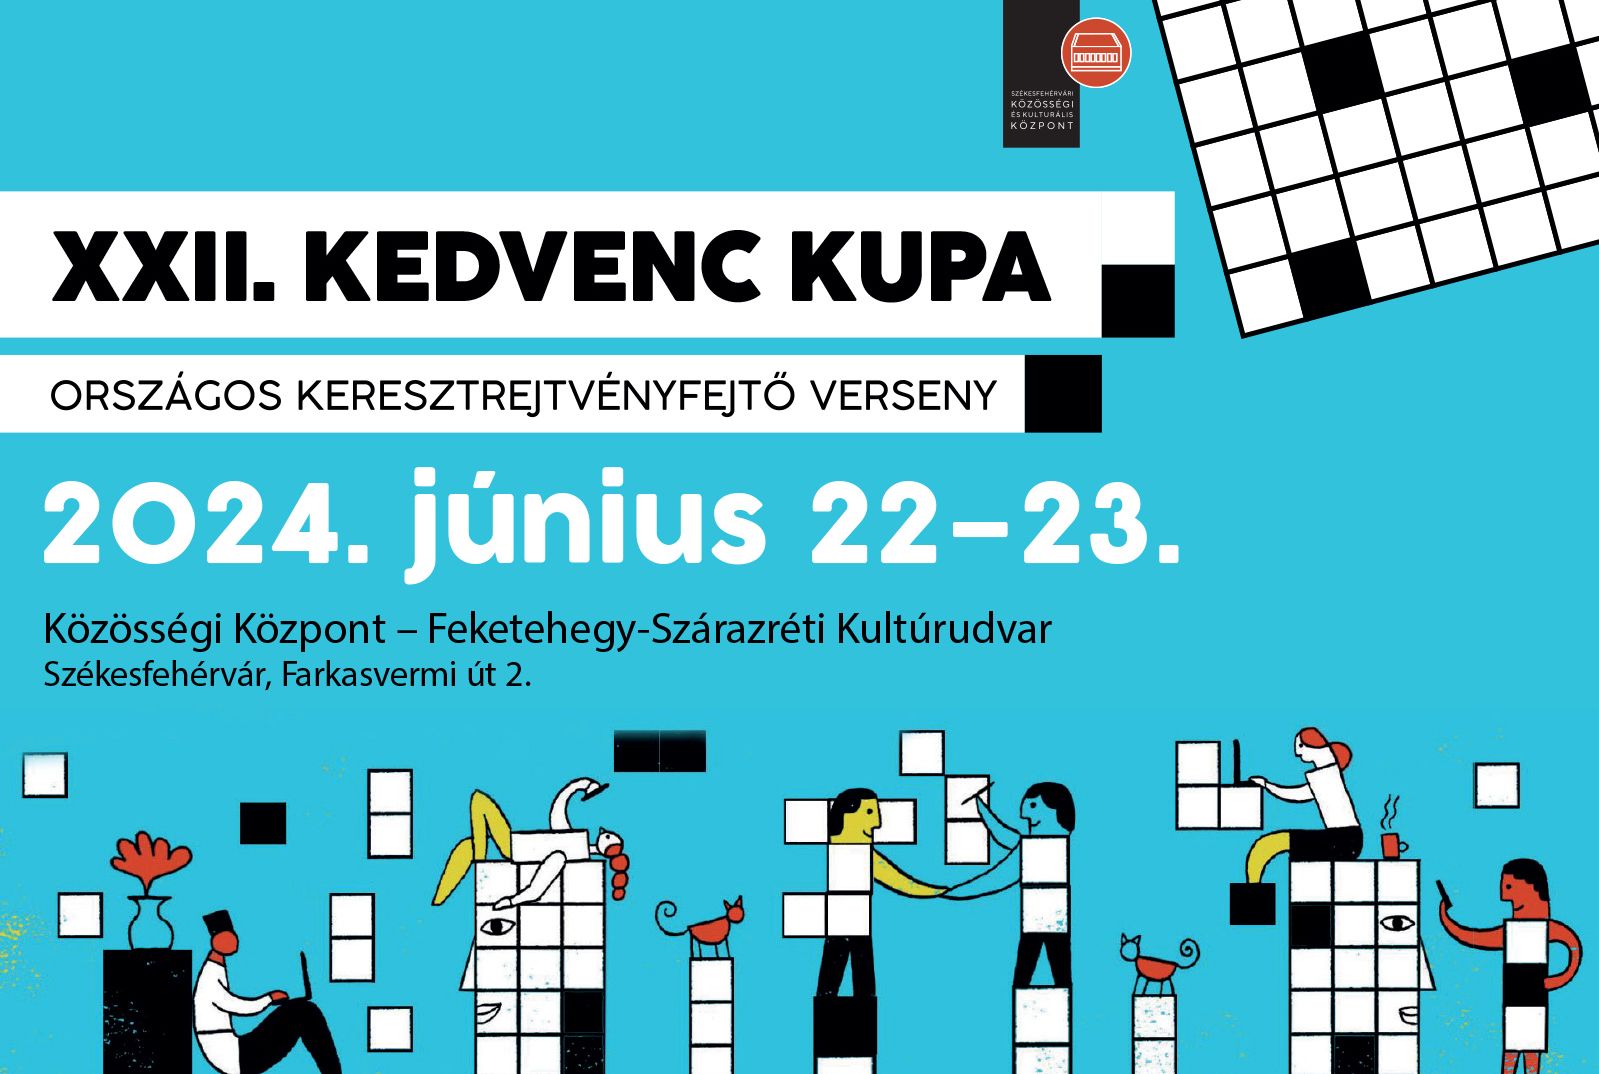 Kedvenc Kupa - országos keresztrejtvényfejtő verseny lesz hétvégén Fehérváron